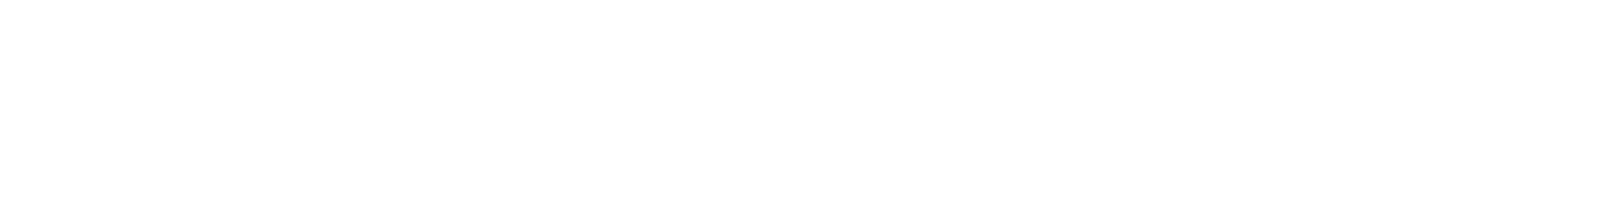 未来のコンピューターを実現するフォトニクス Photonics for Future Computing